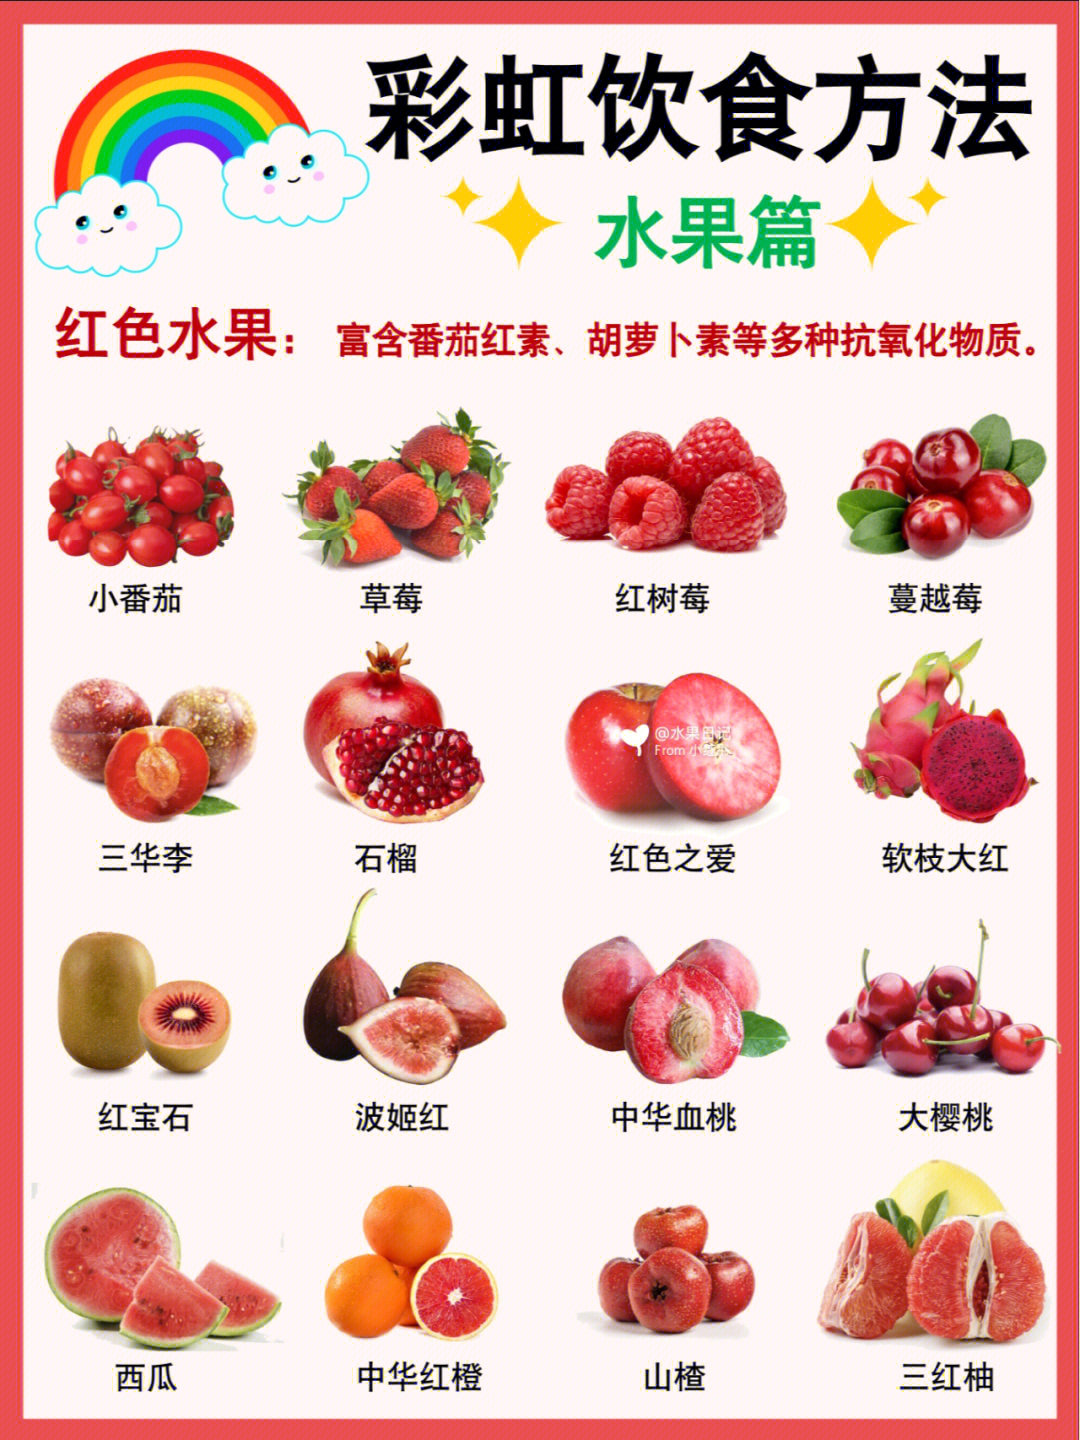 彩虹饮食原则水果要注意食用多种色彩